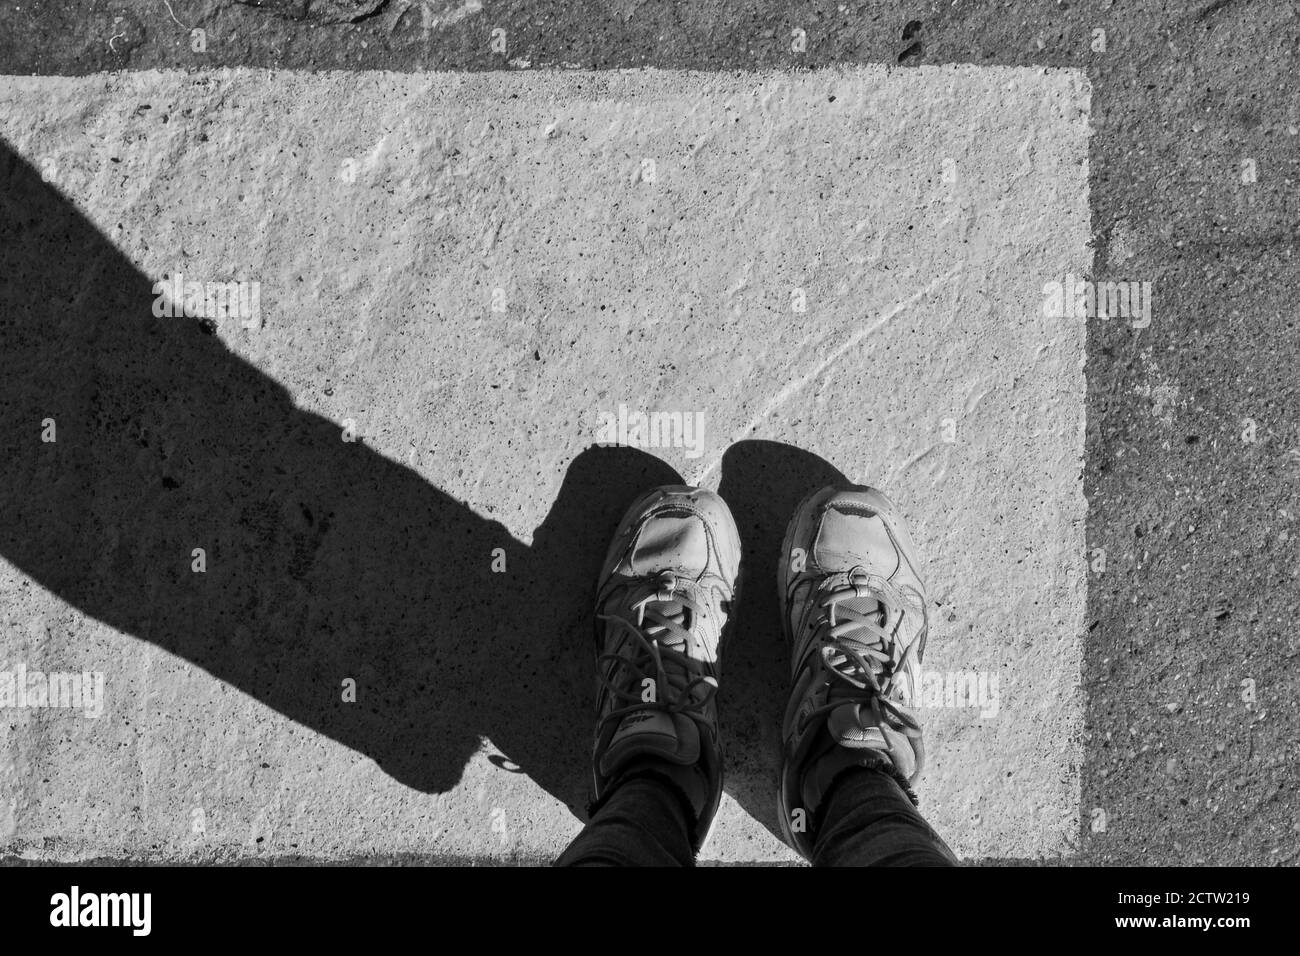 Esthétique minimaliste. Noir et blanc. Pieds dans des chaussures sur un carré blanc sur un asphalte foncé. Concept créatif Banque D'Images